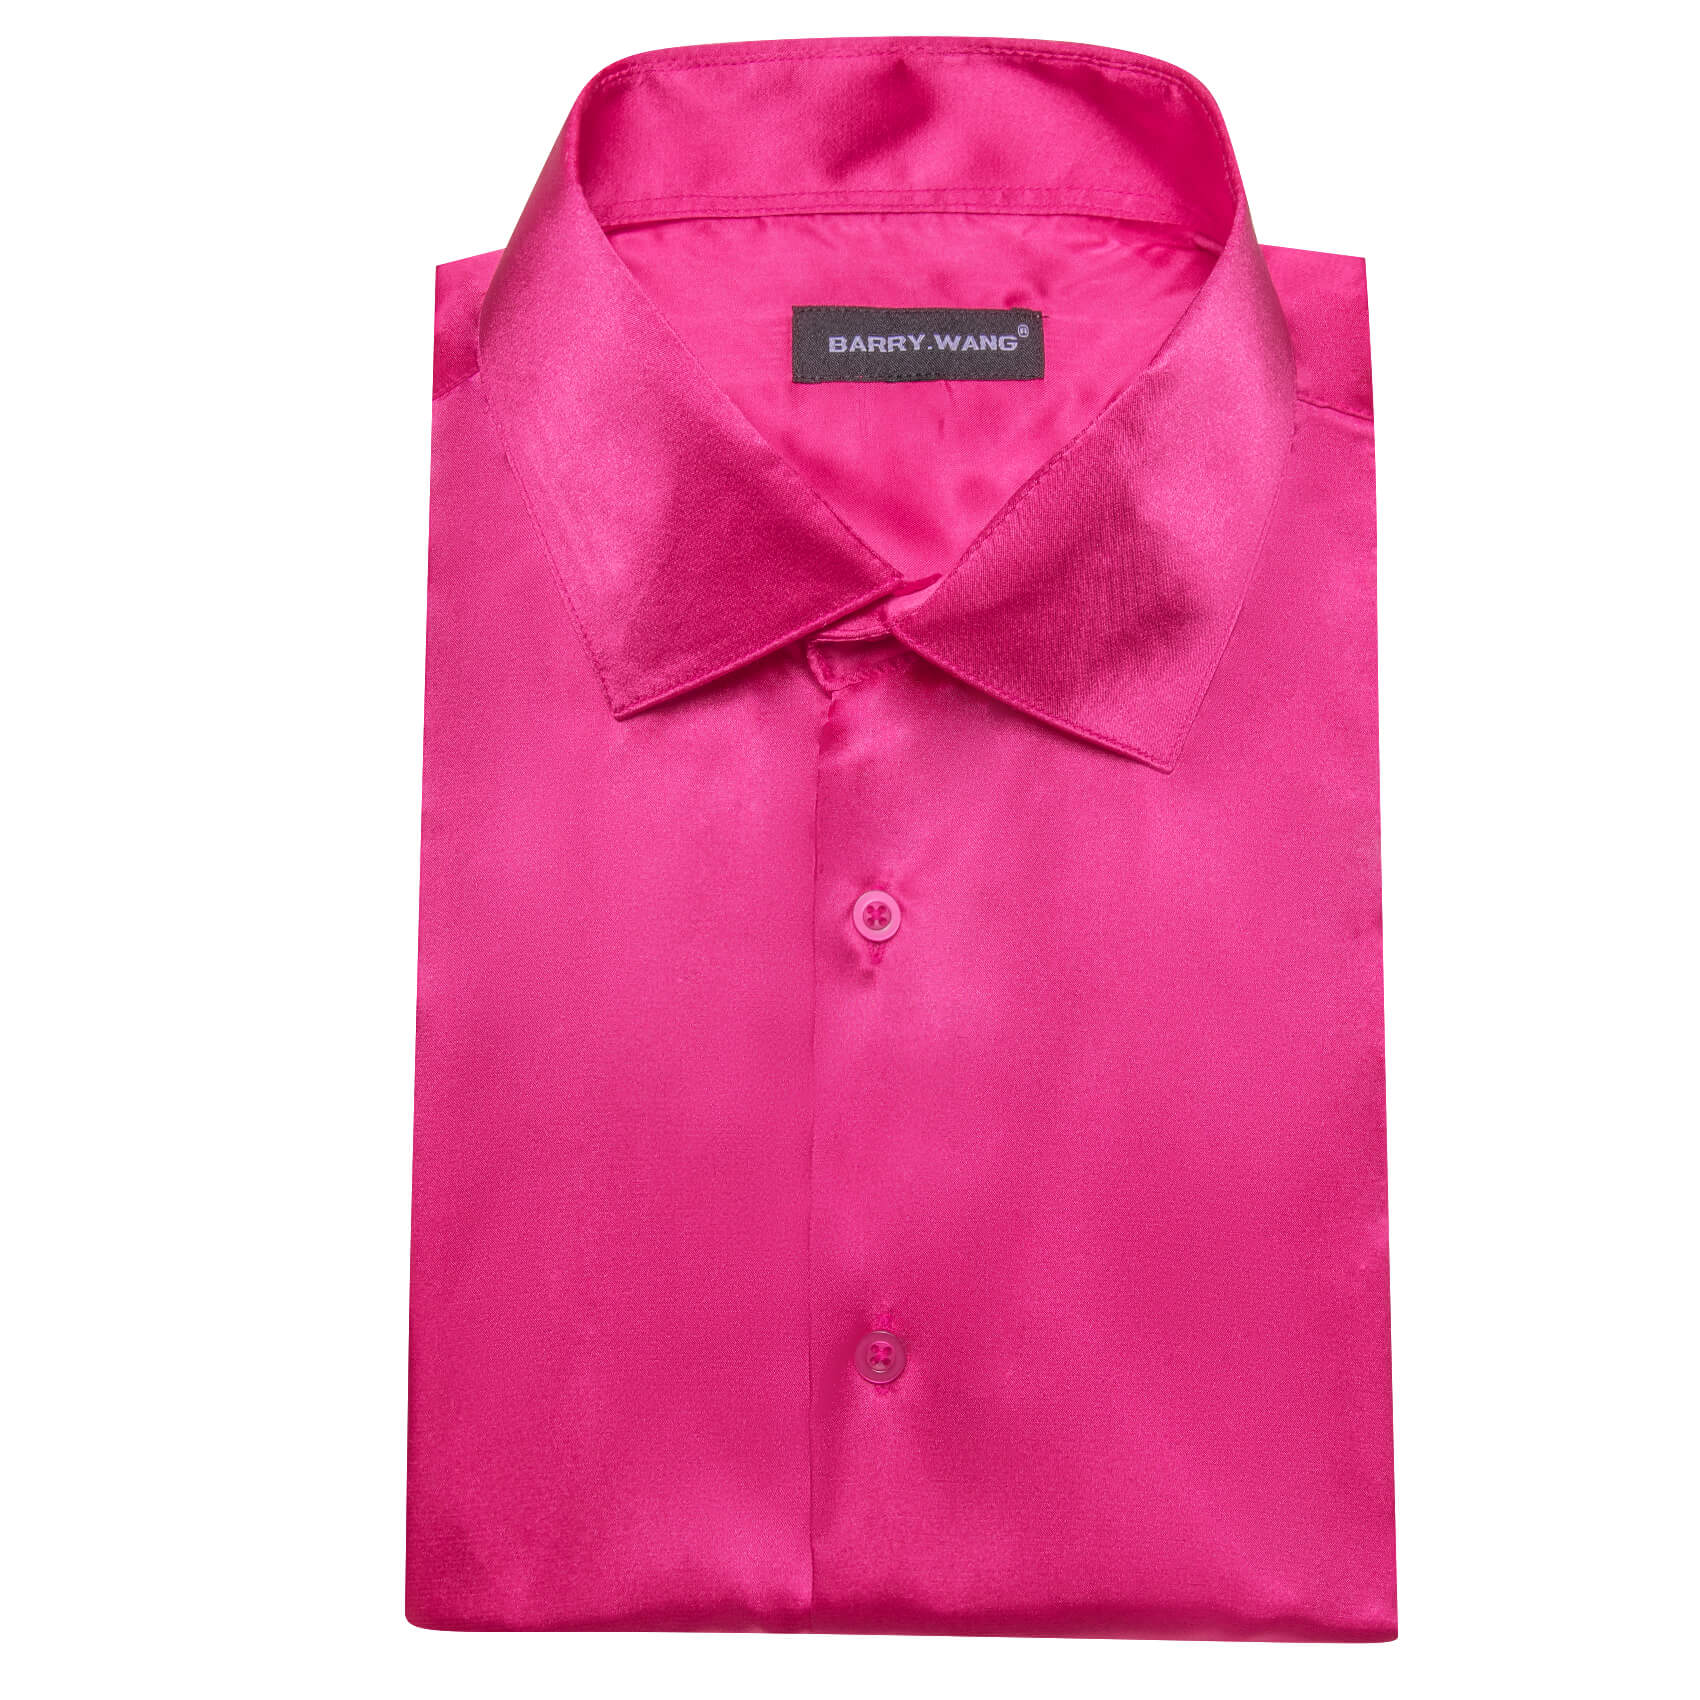  Short Sleeve Shirt Solid DeepPink Shirt